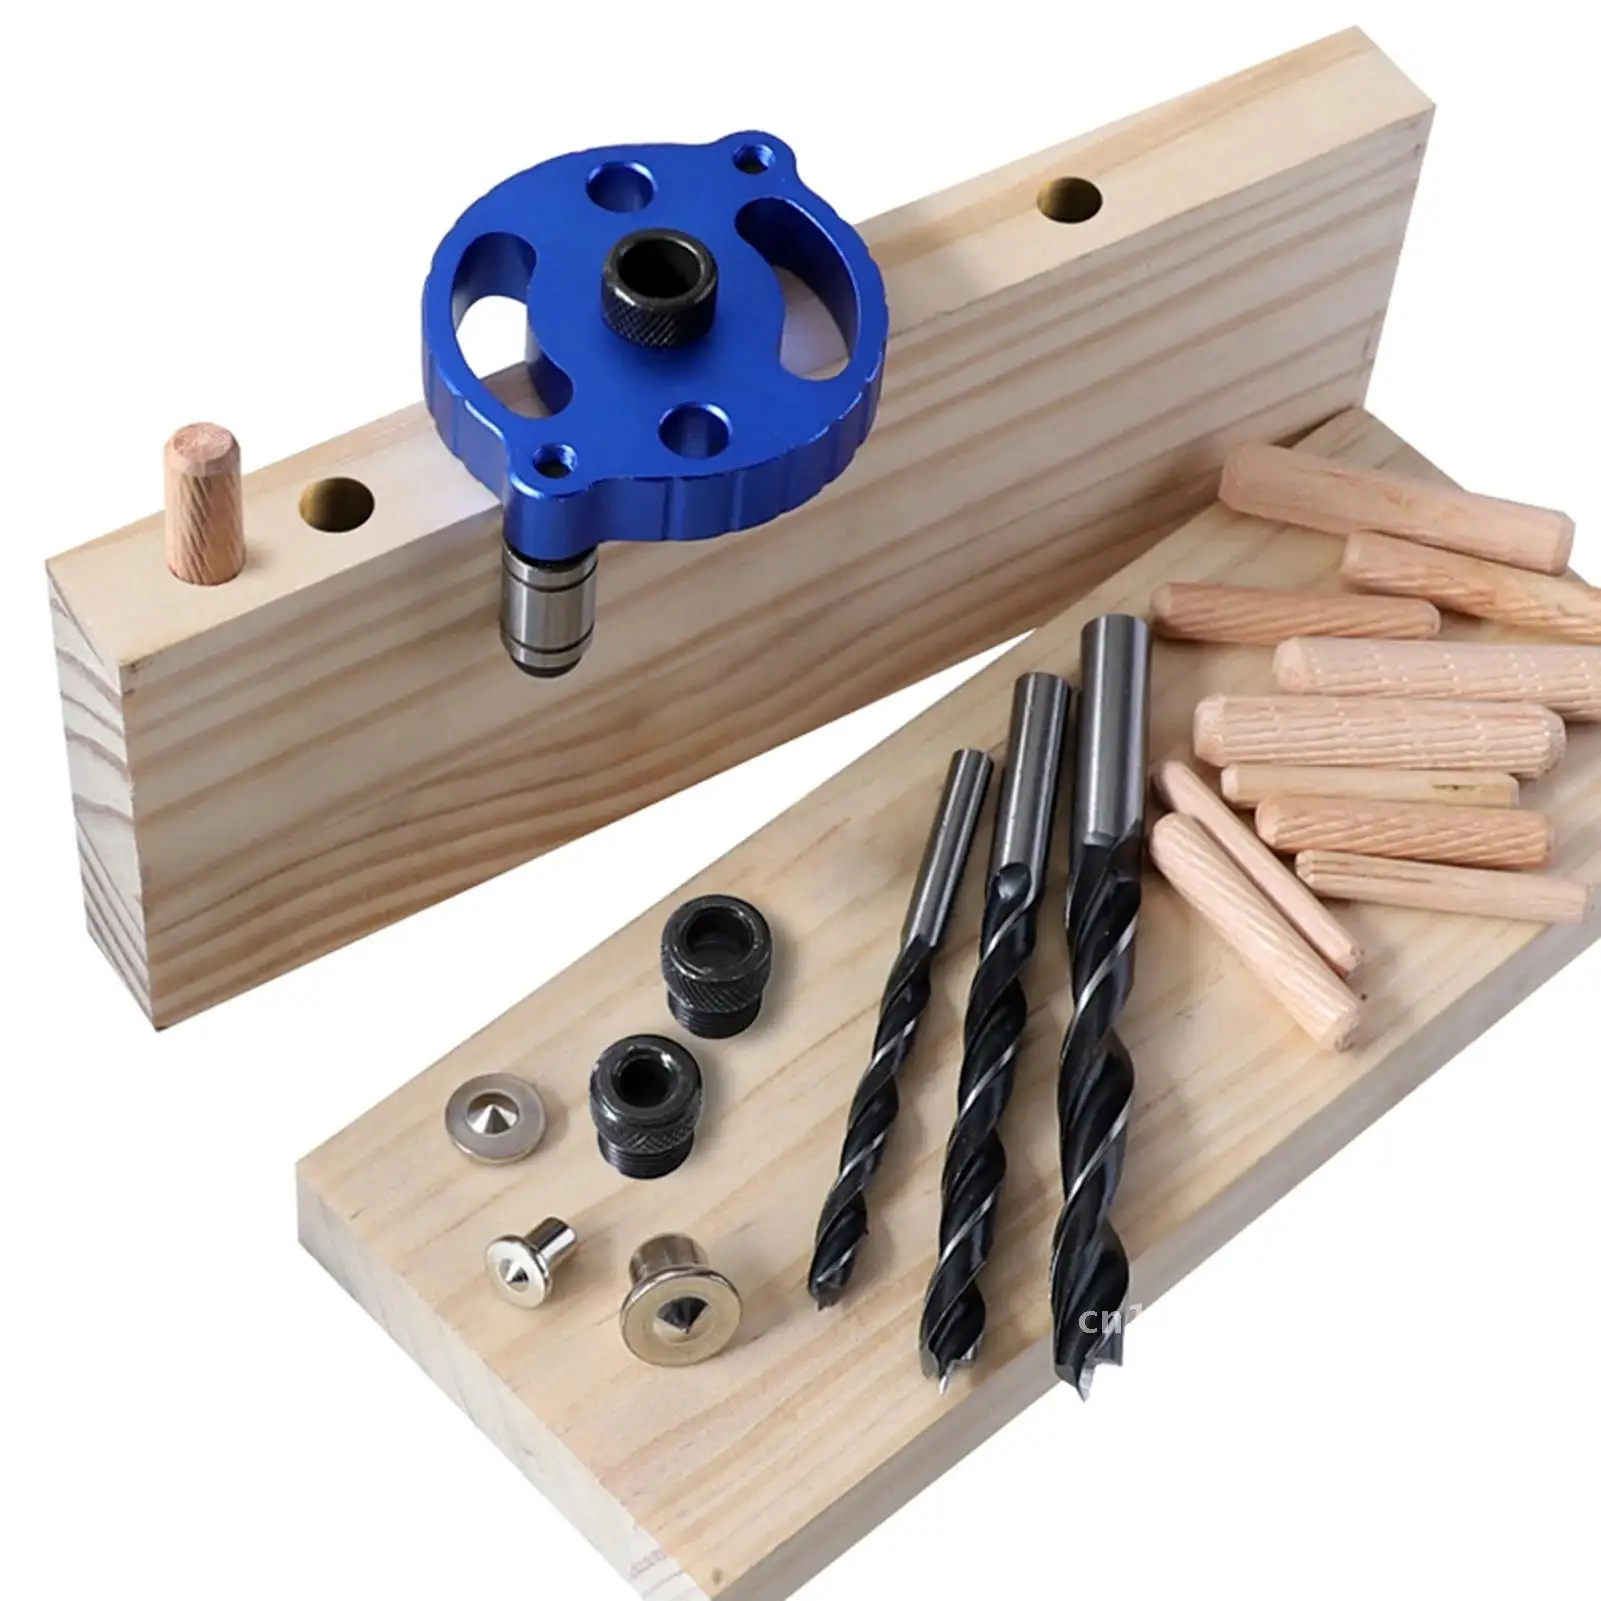 

Устройство для открывания отверстий для сверления, инструмент для деревообработки, точные практичные инструменты для мебельных заводов и рукоделия